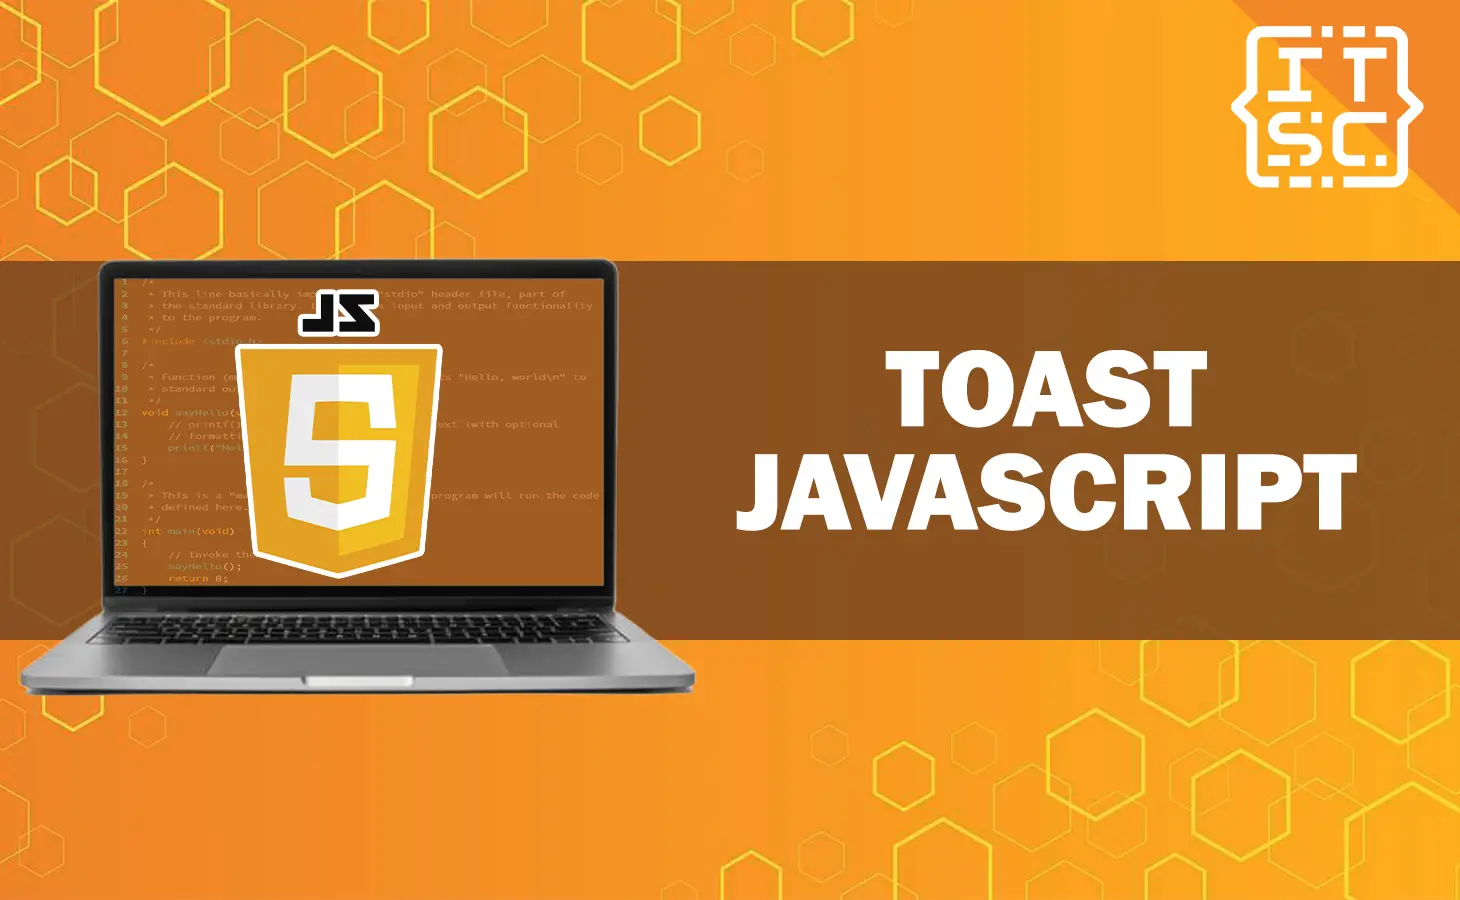 Toast JavaScript